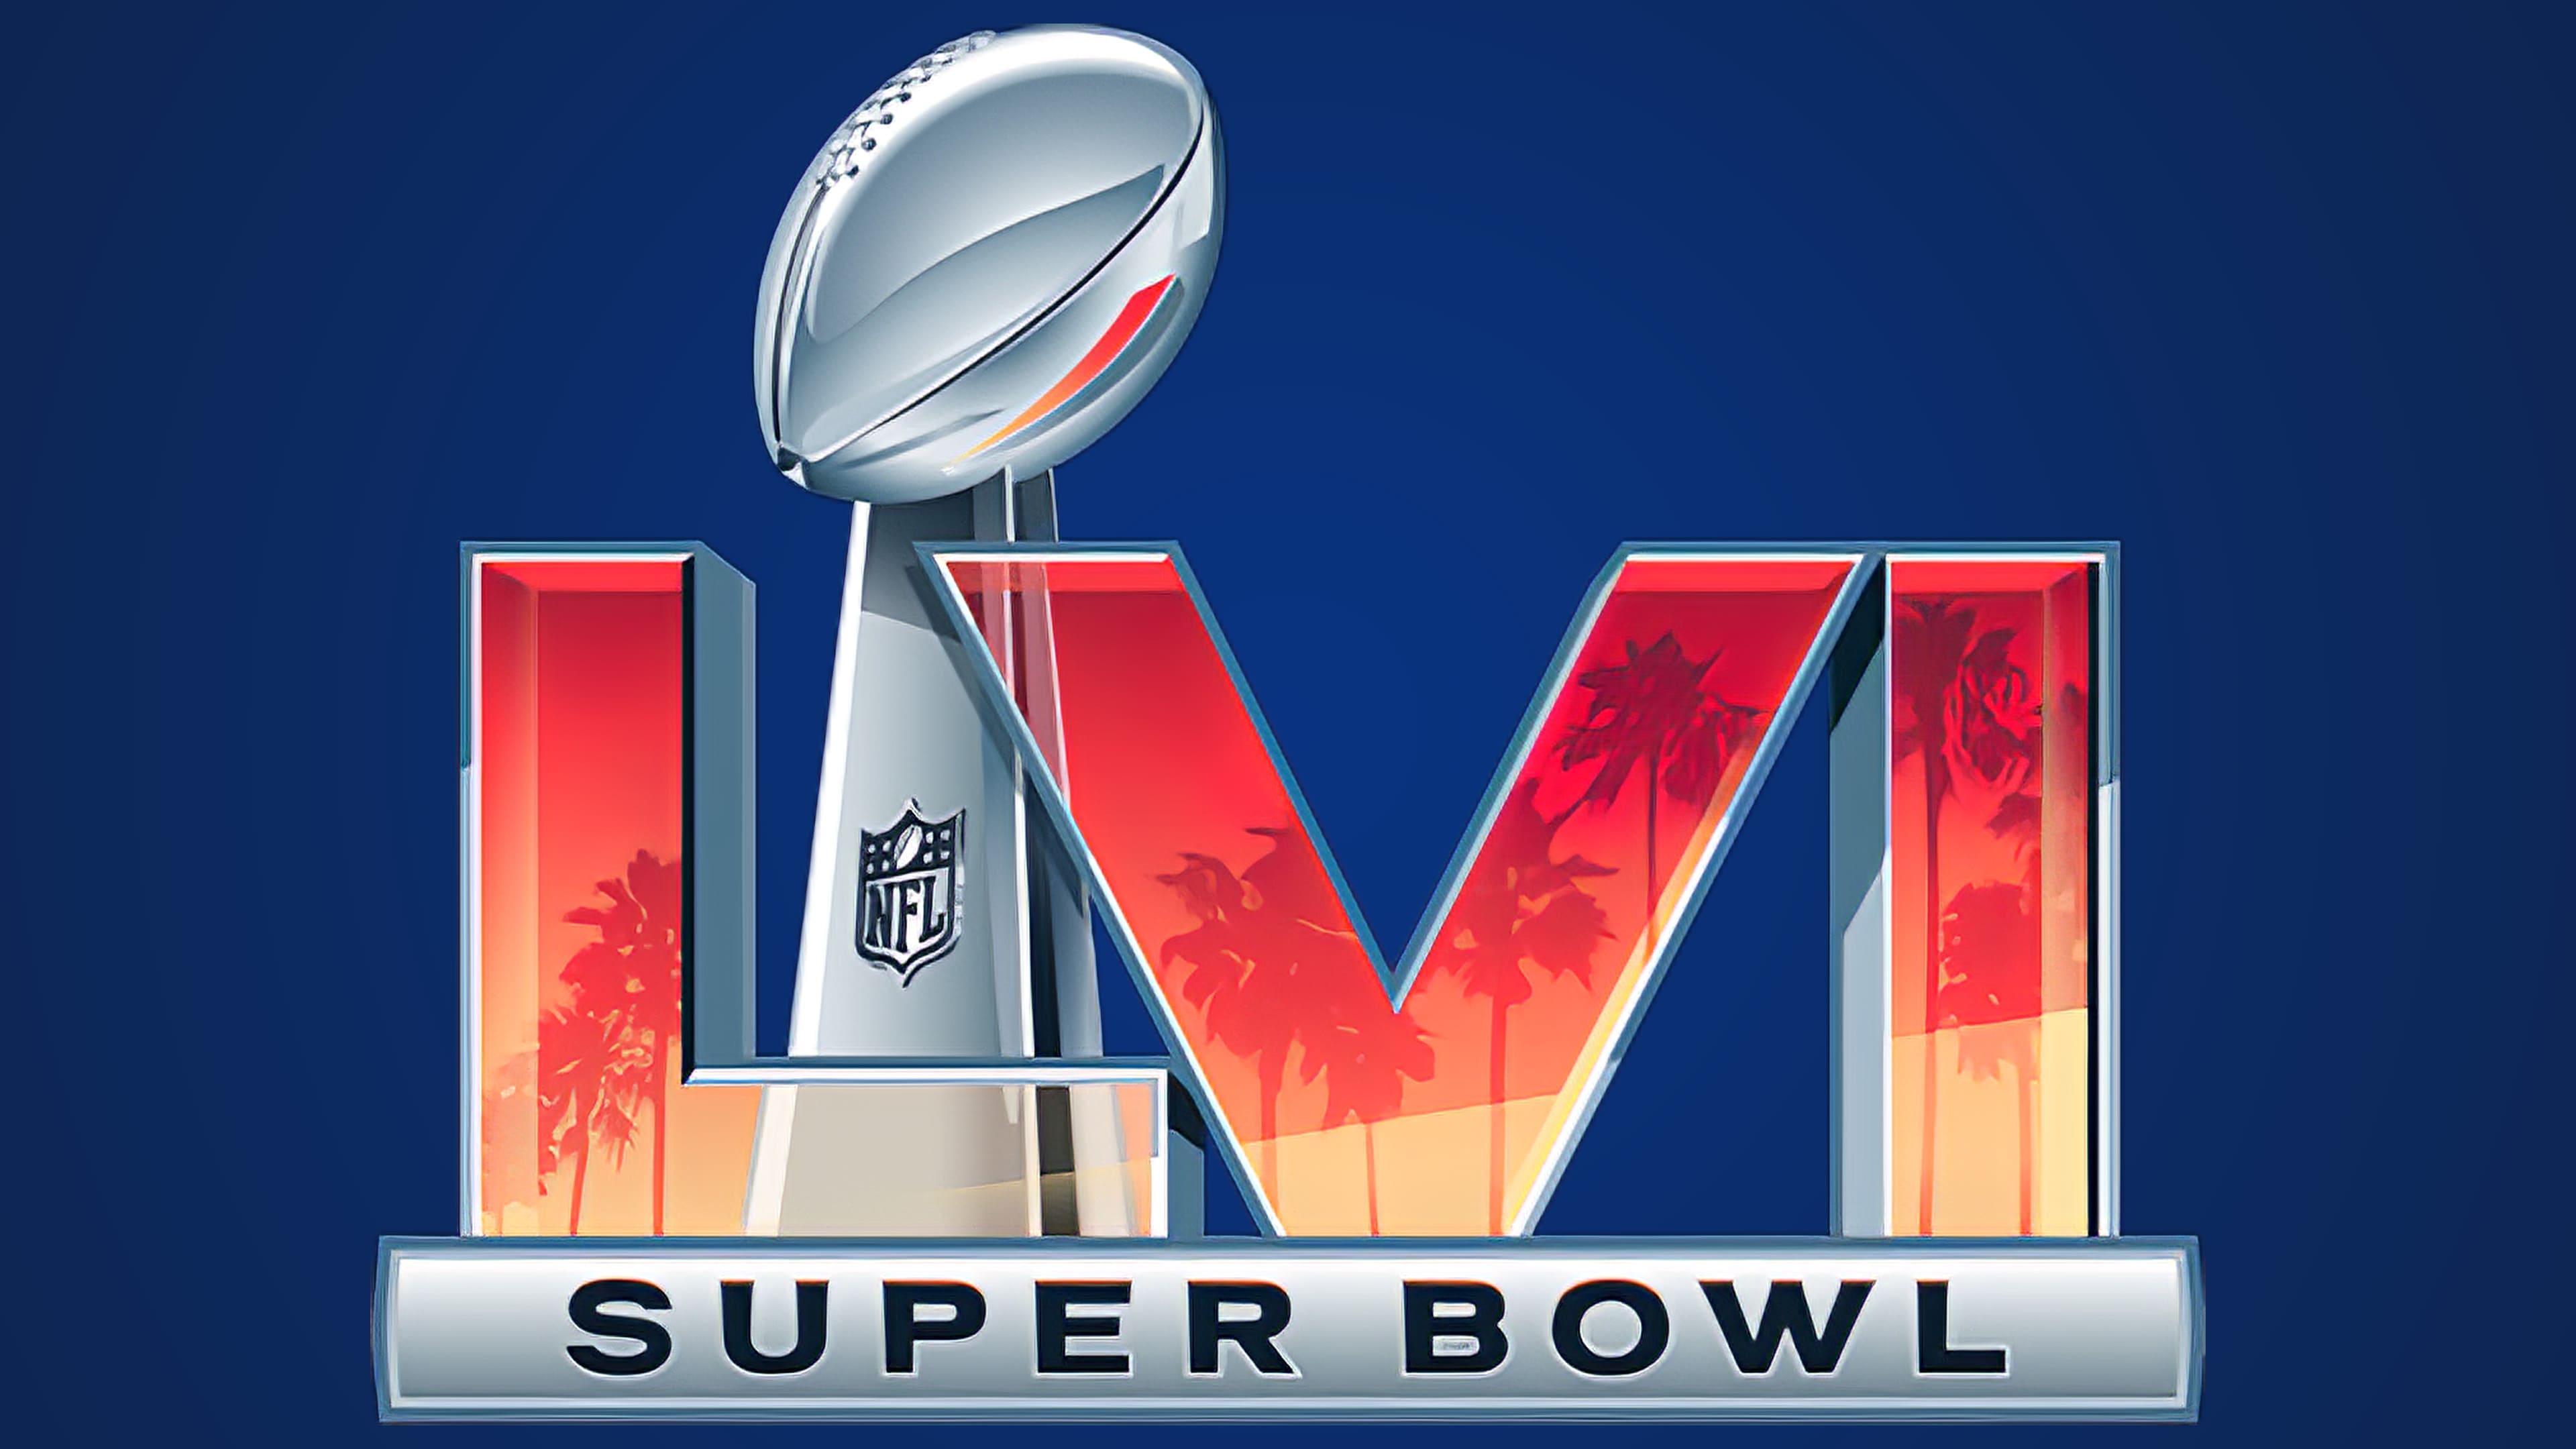 New Super Bowl LVI logo